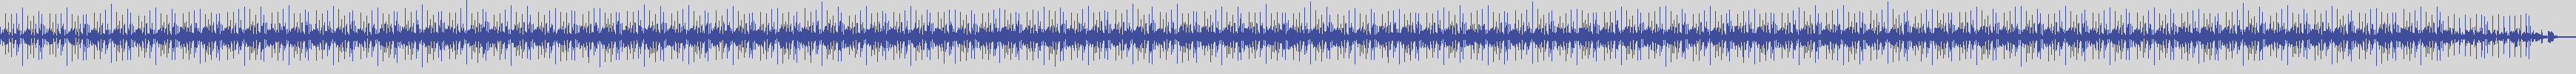 noclouds_chillout [NOC144] White Ensemble - Cut Driving [Original Mix] audio wave form